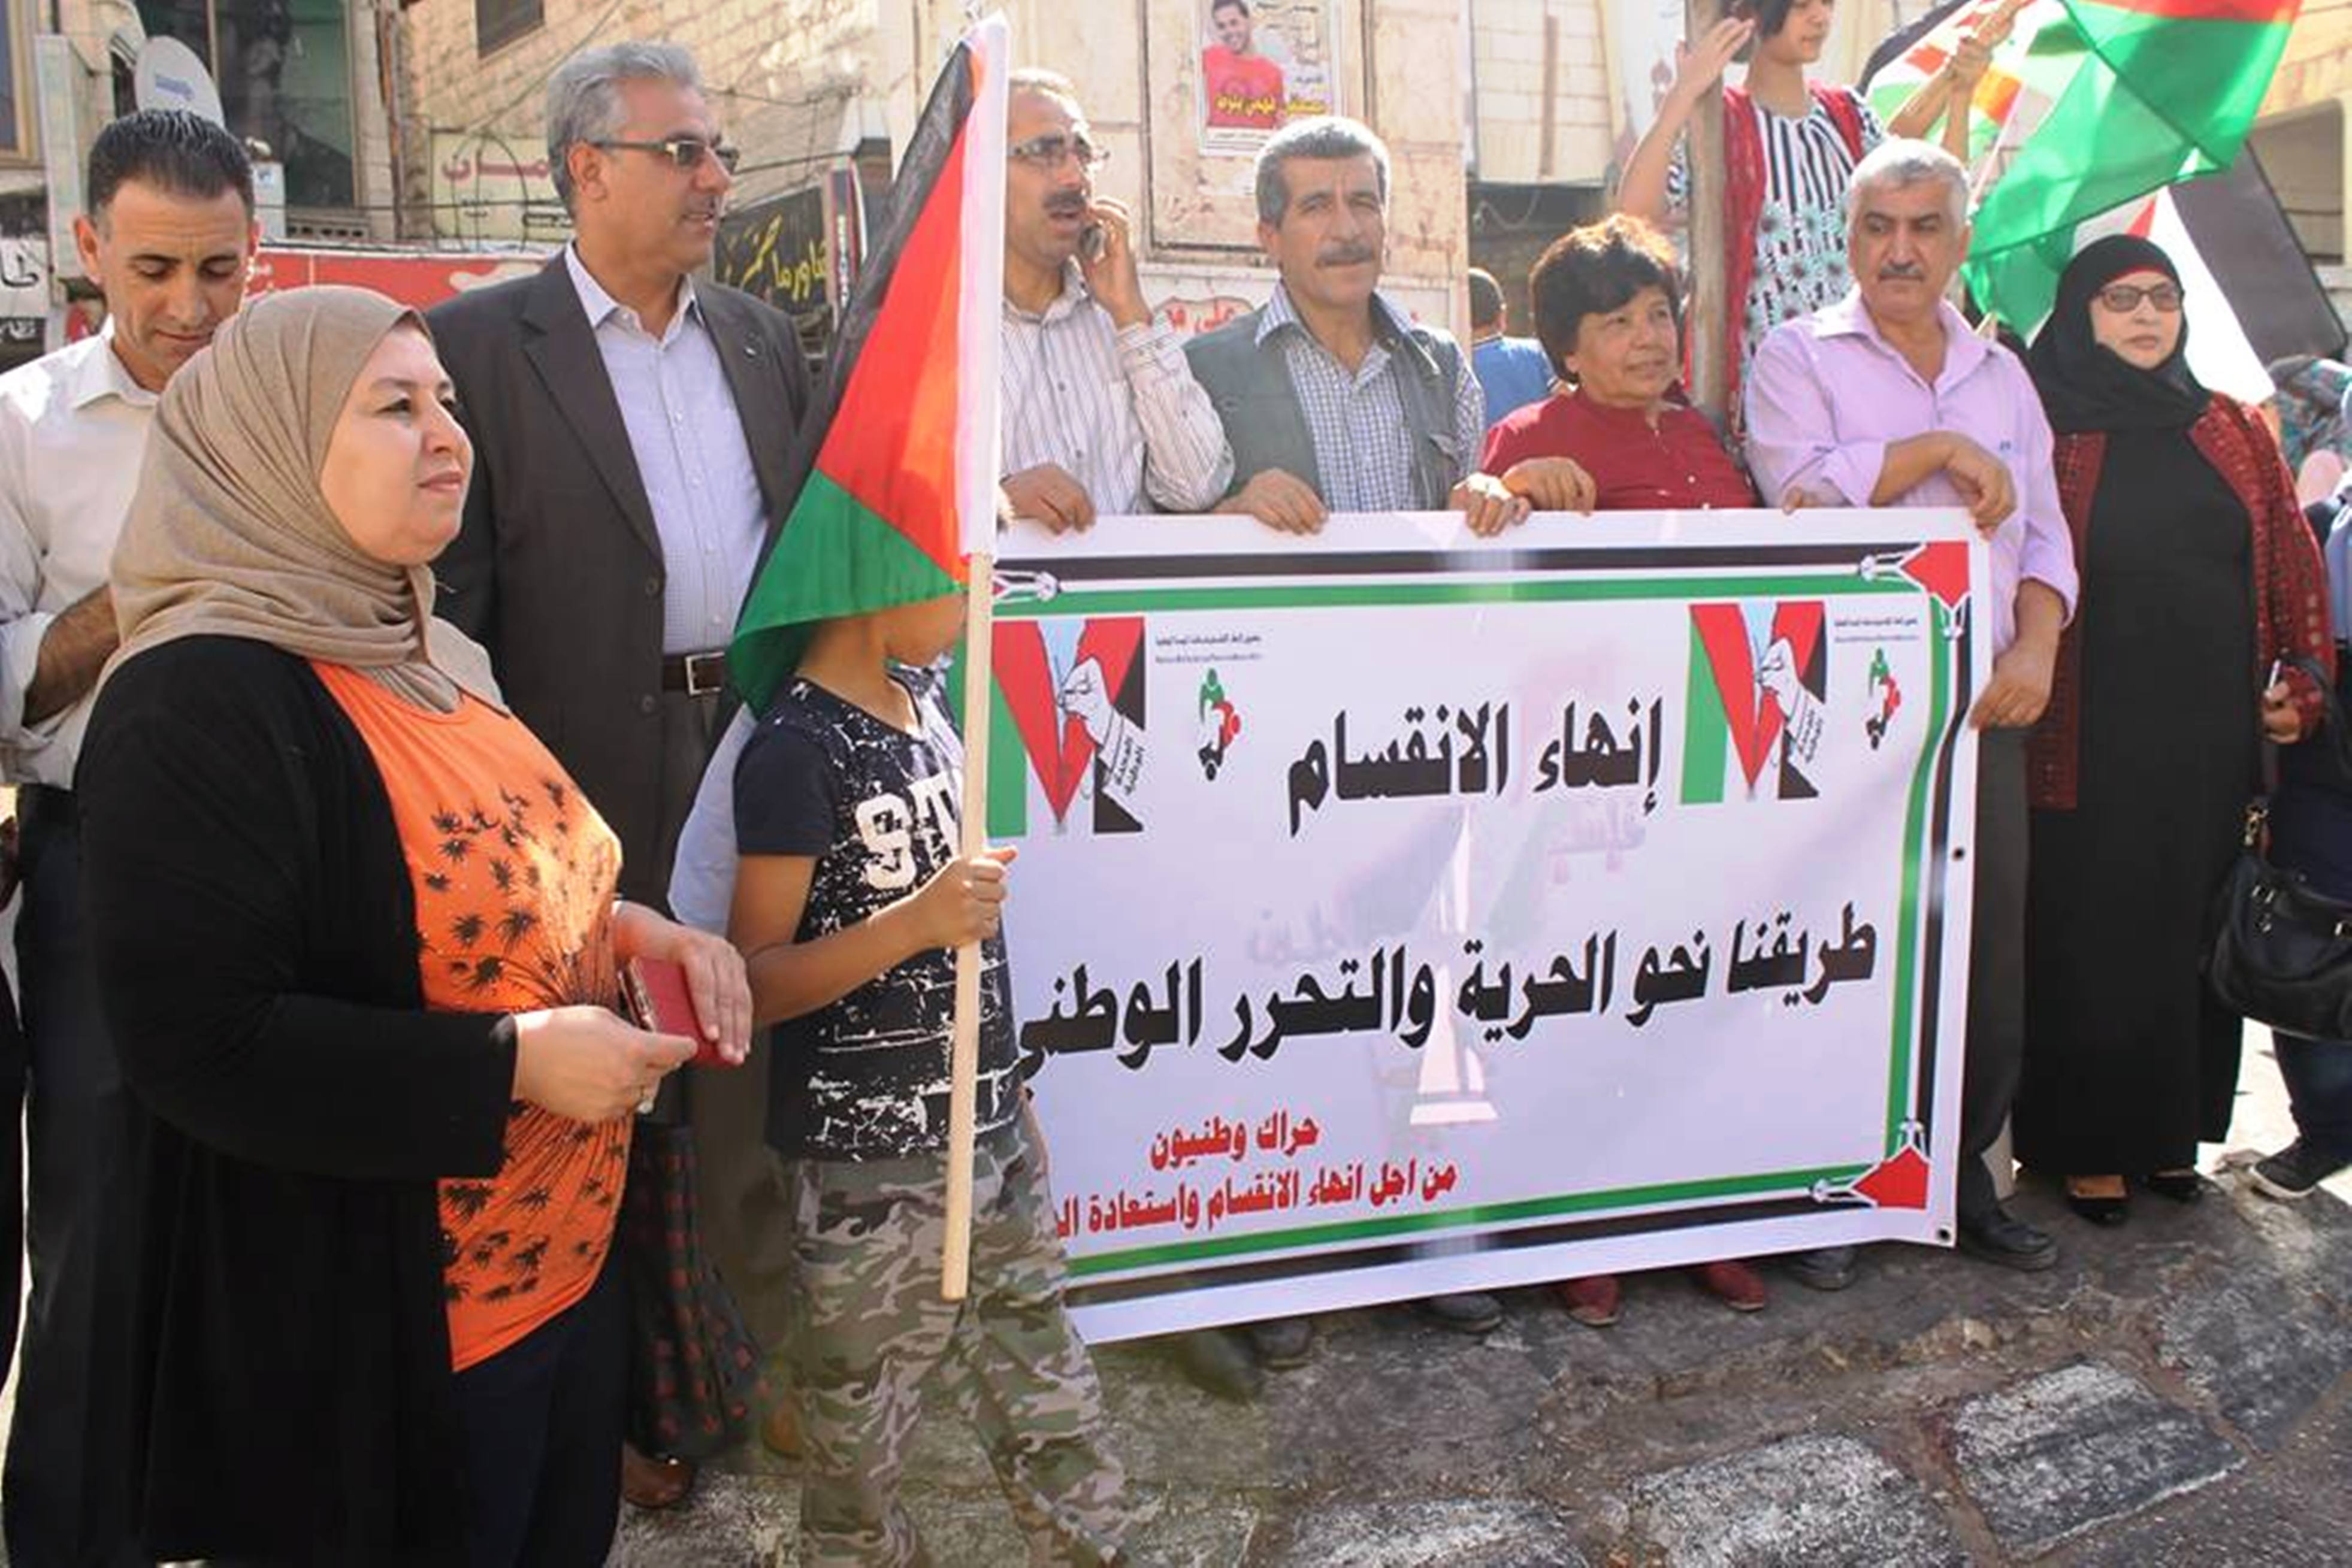 الفصائل بغزة تعلن بنود رؤيتها الوطنية لإنهاء الانقسام